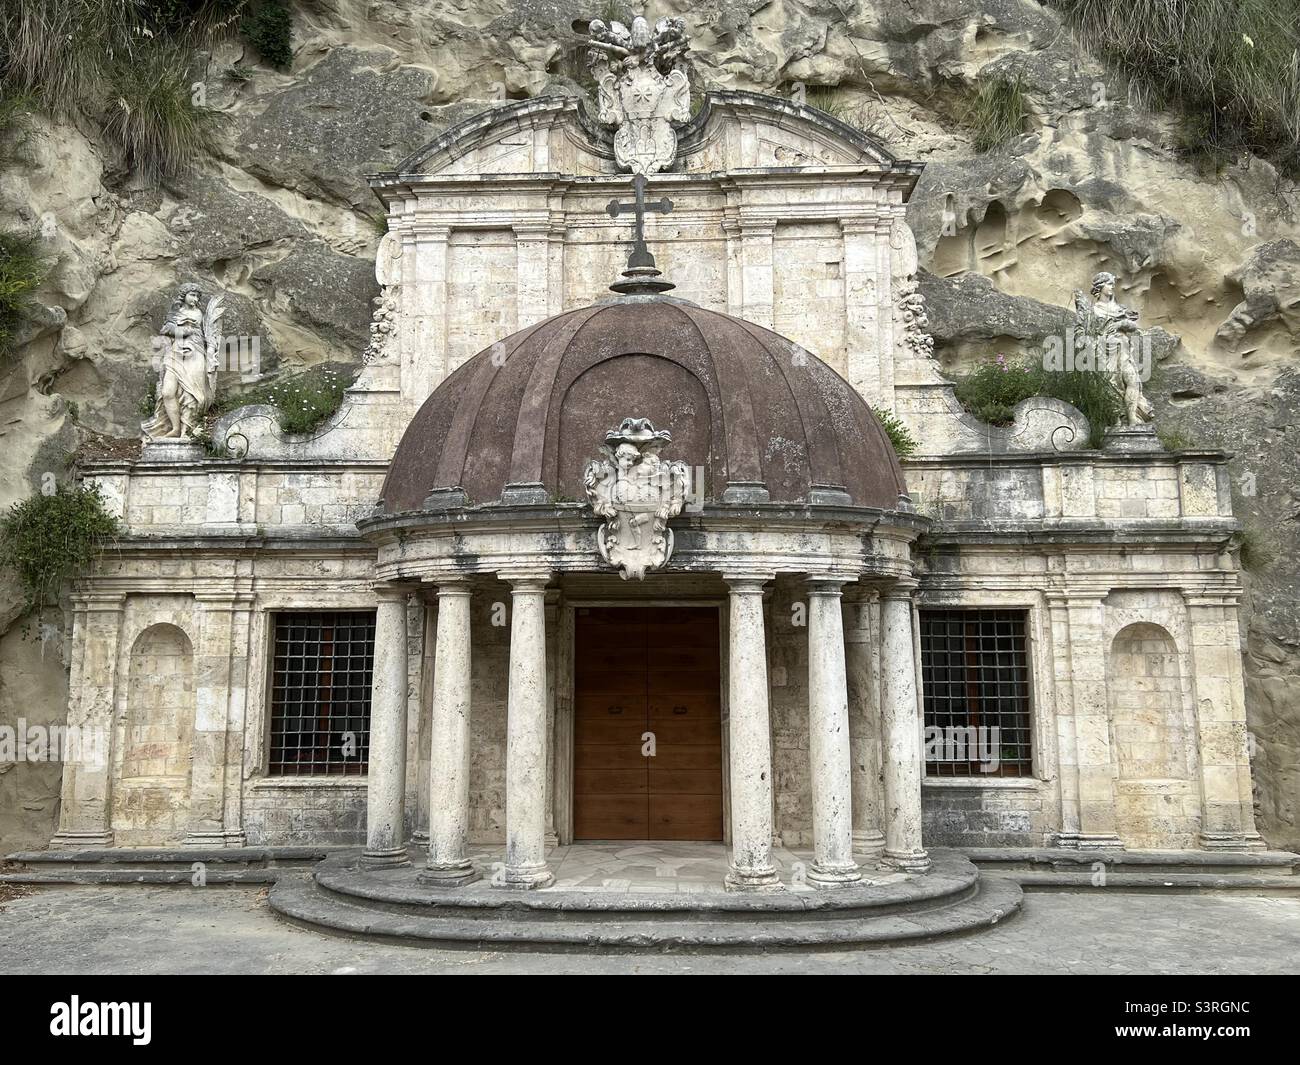 Sanctuary of Sant'Emidio alle Grotte, Ascoli Piceno, Marche region, Italy Stock Photo